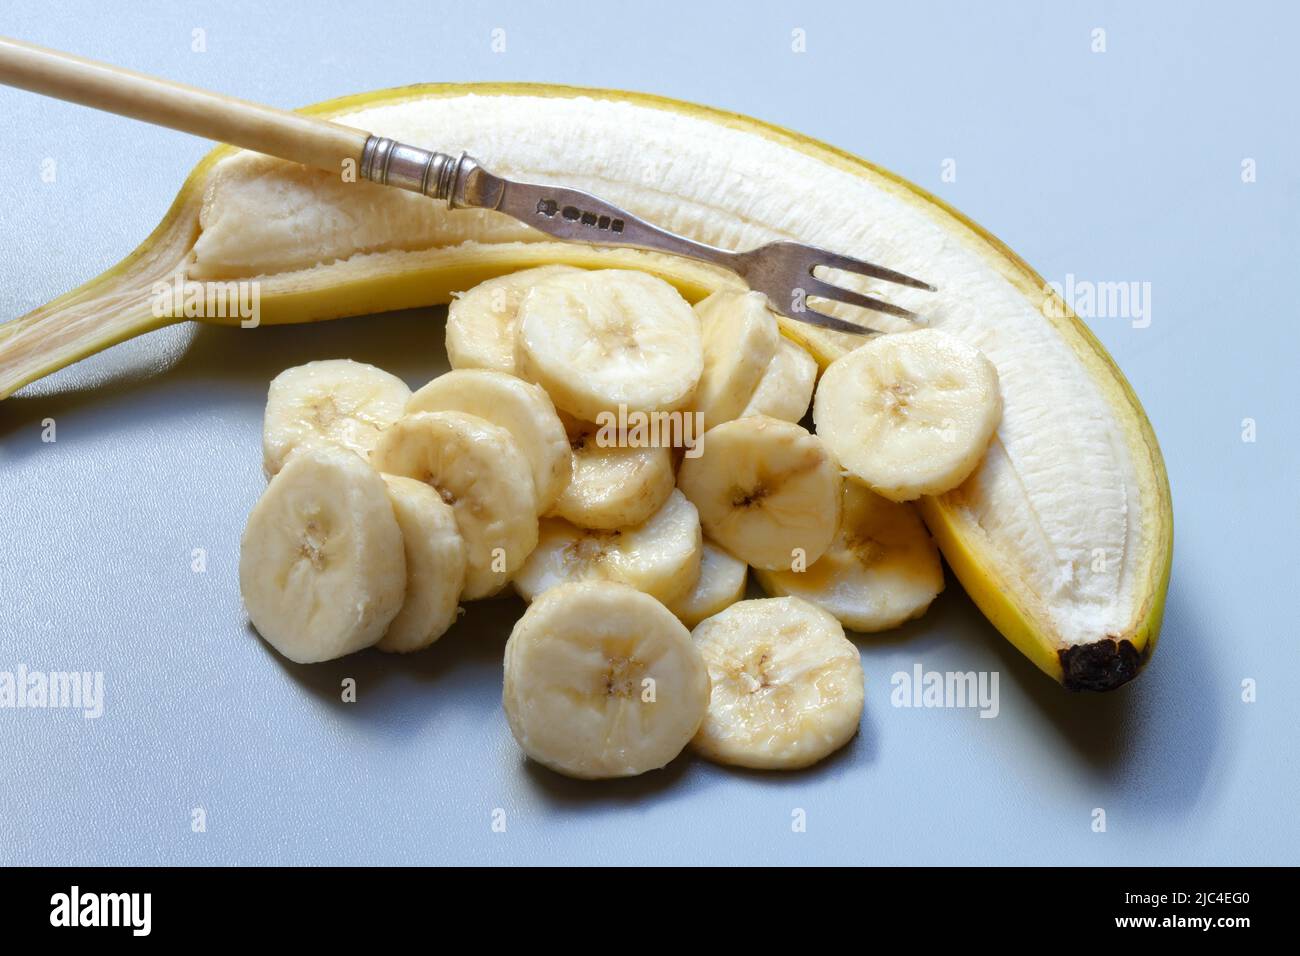 vue de dessus de bananes fraîches 17442926 Photo de stock chez